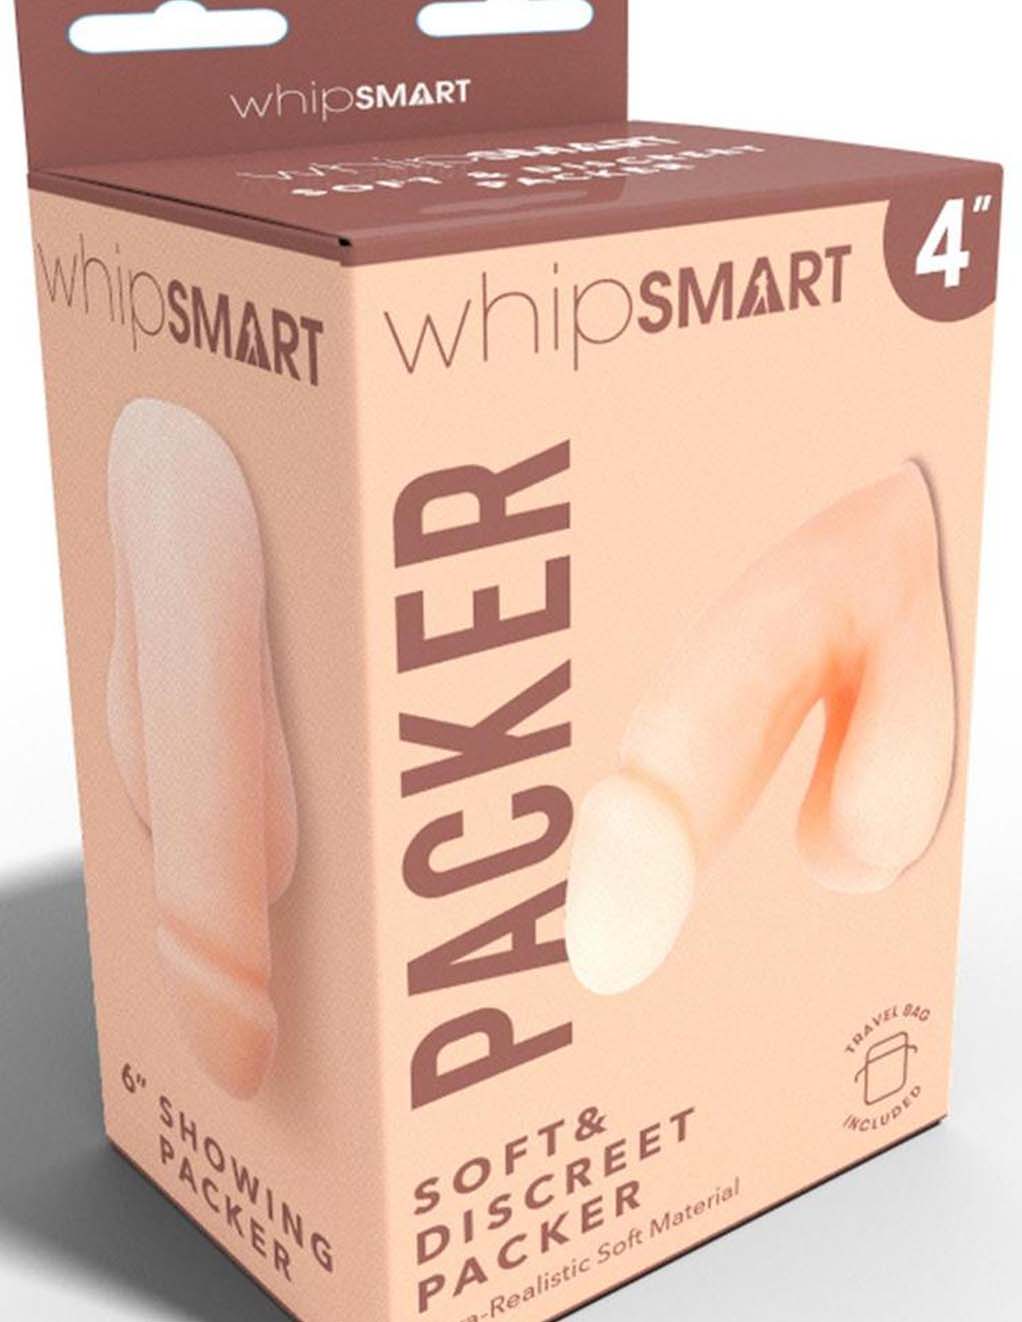 WhipSmart 4" Soft & Discreet Packer- Light- Box